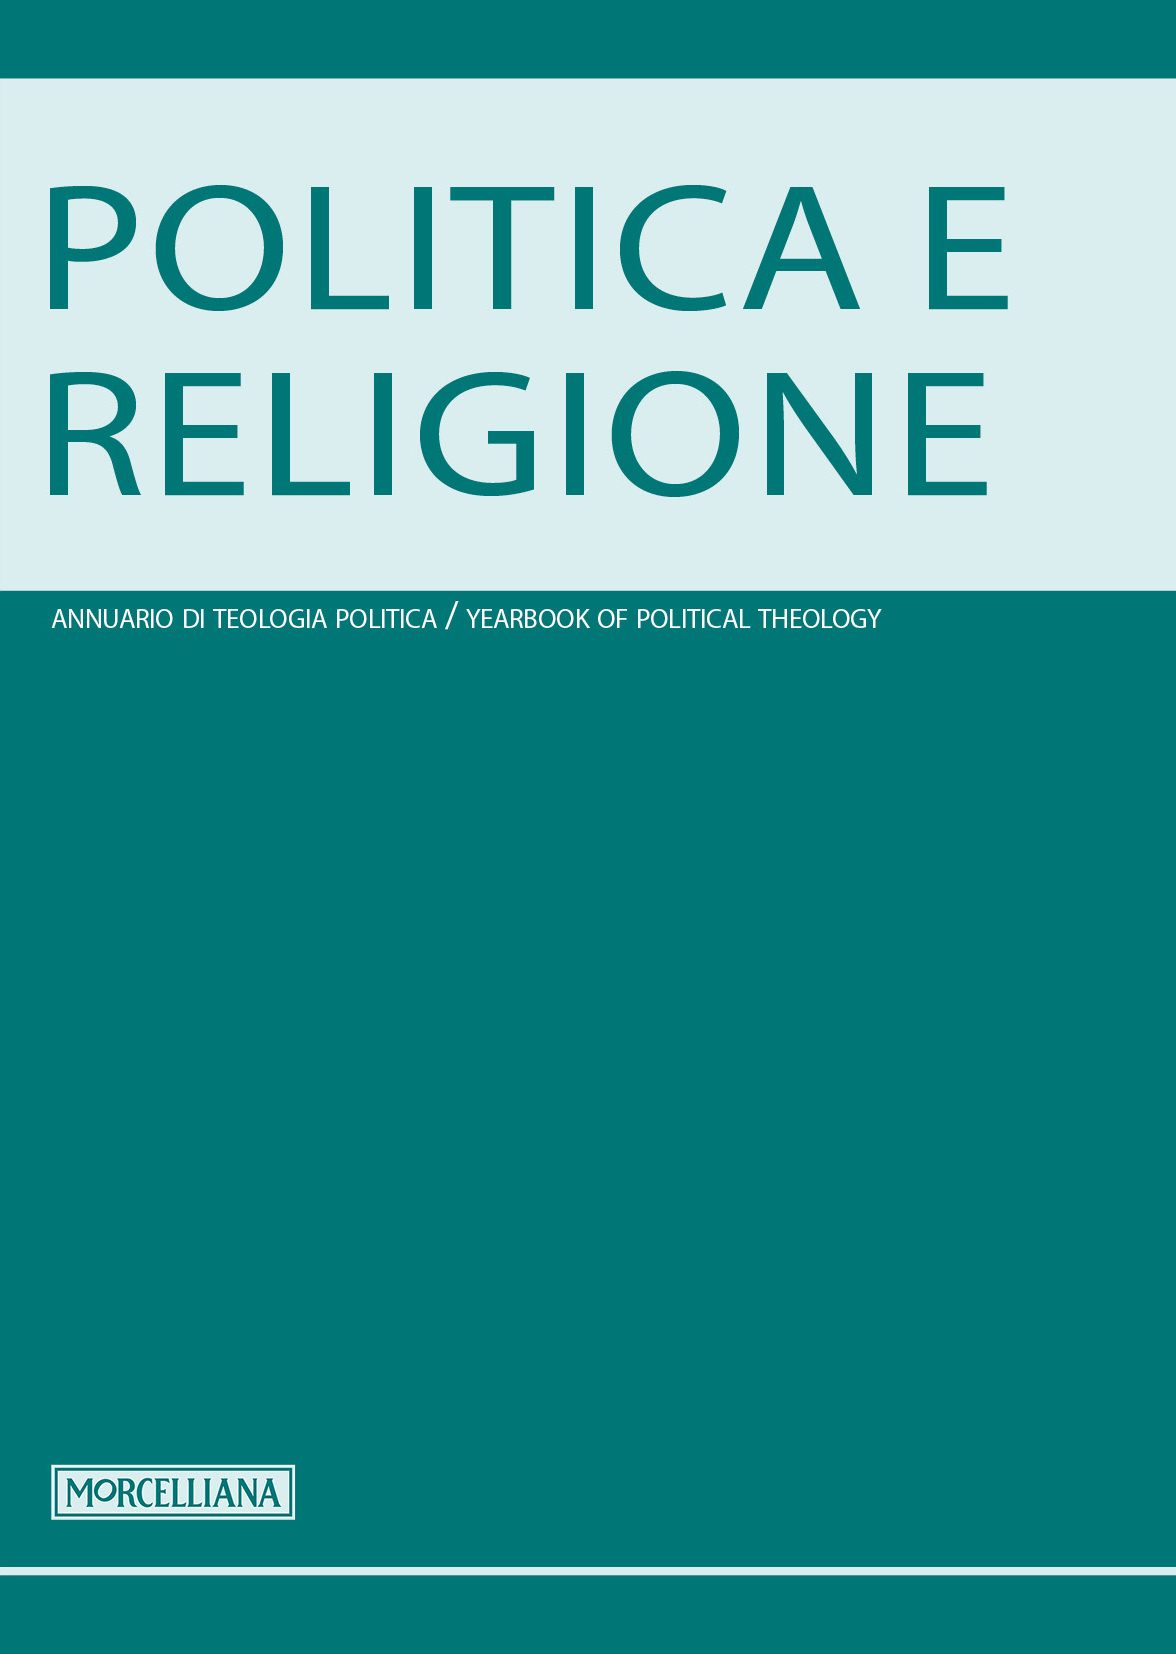 POLITICA E RELIGIONE.jpg